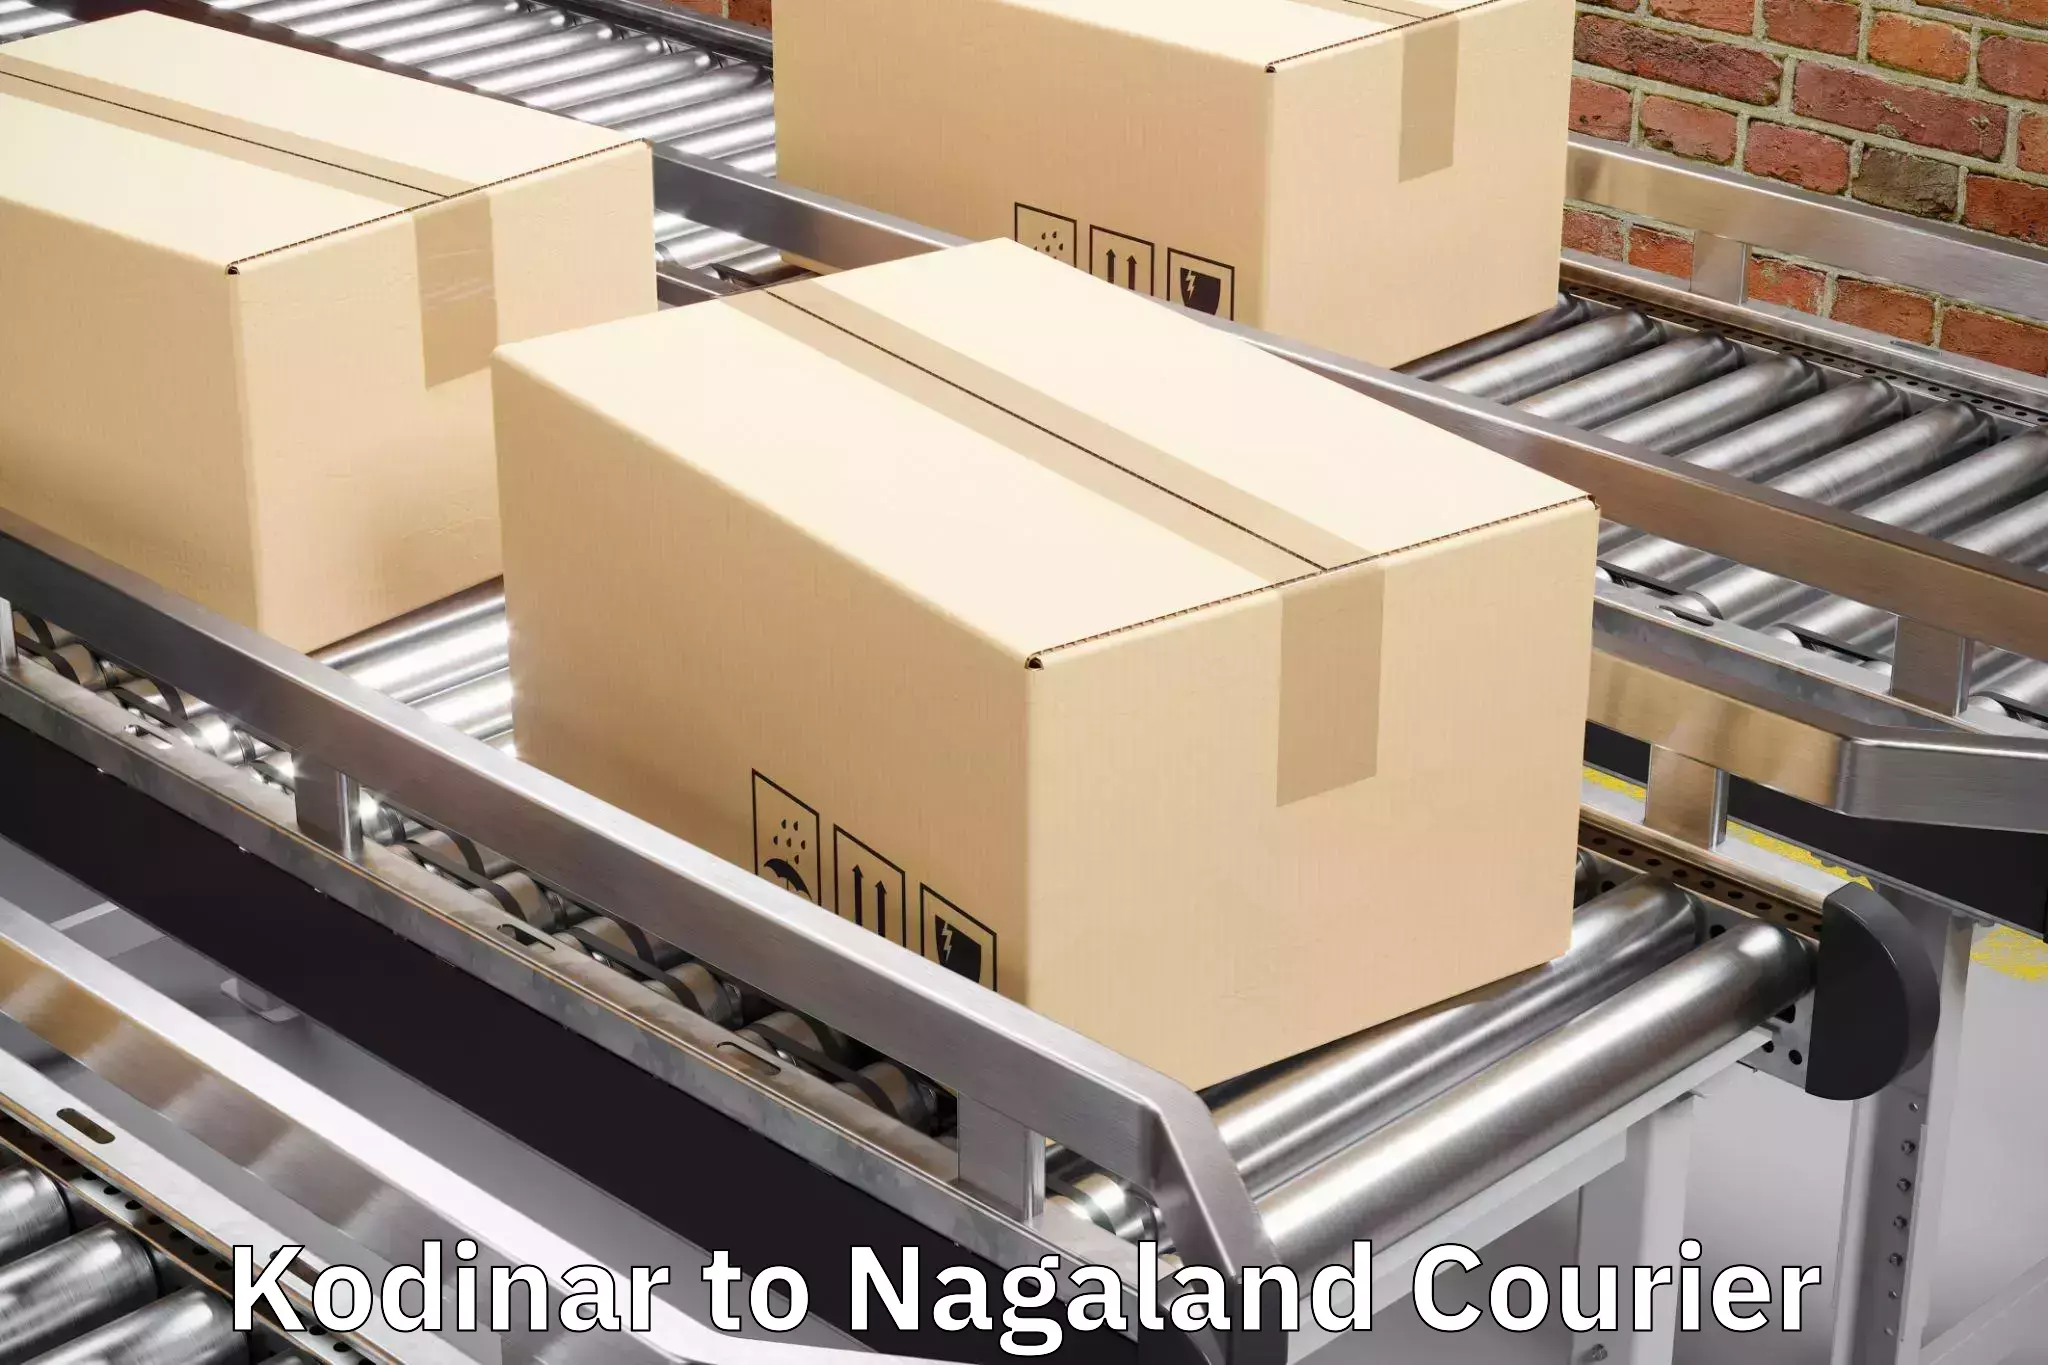 Baggage transport cost Kodinar to Nagaland